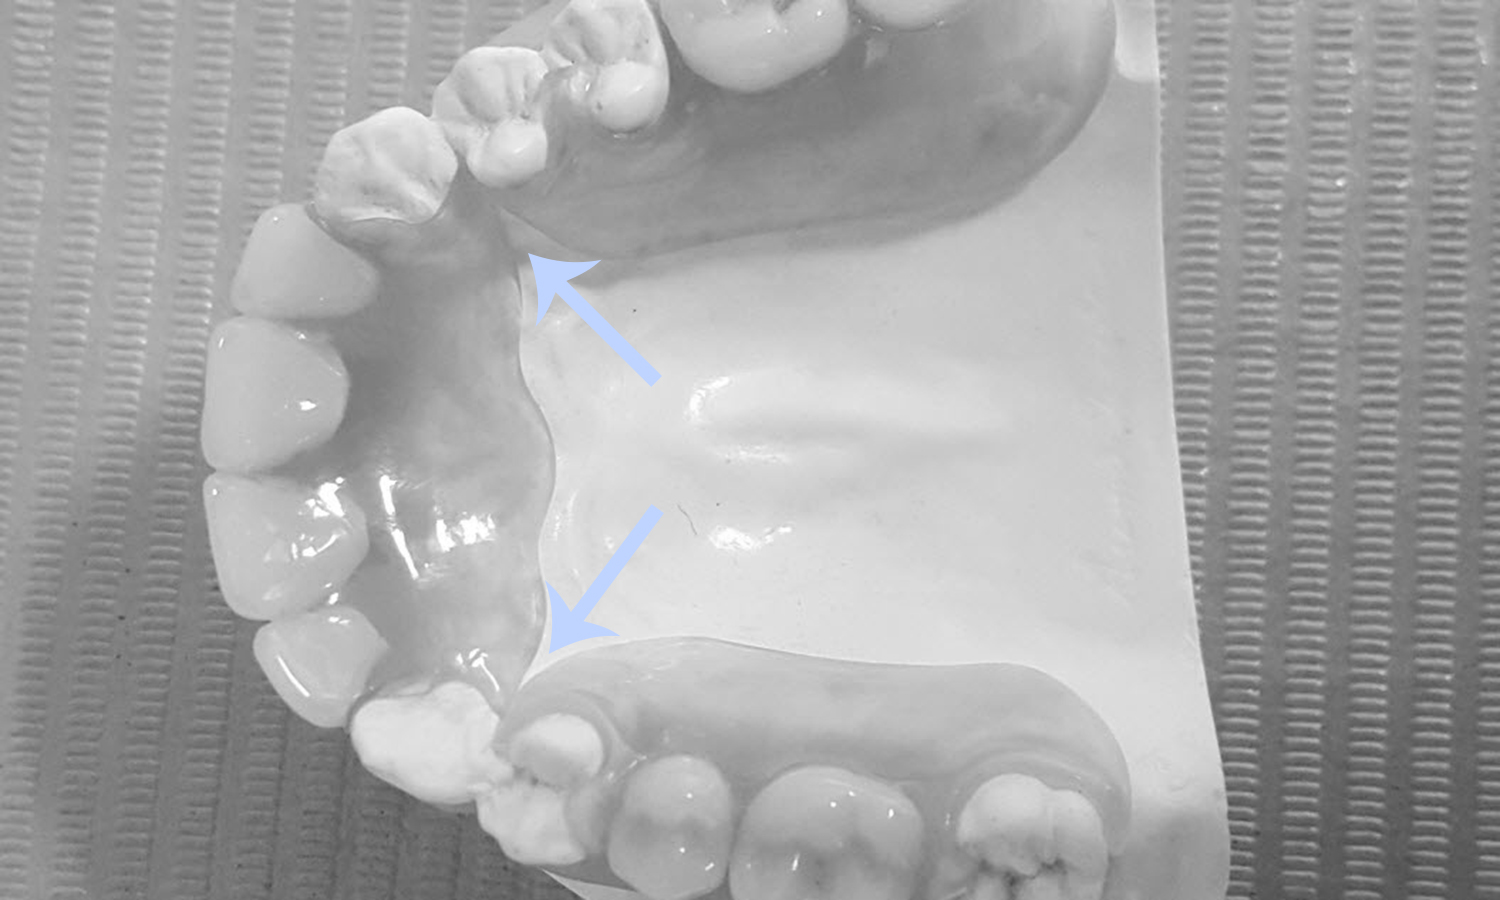 prótese dentária com grampo estético problemas